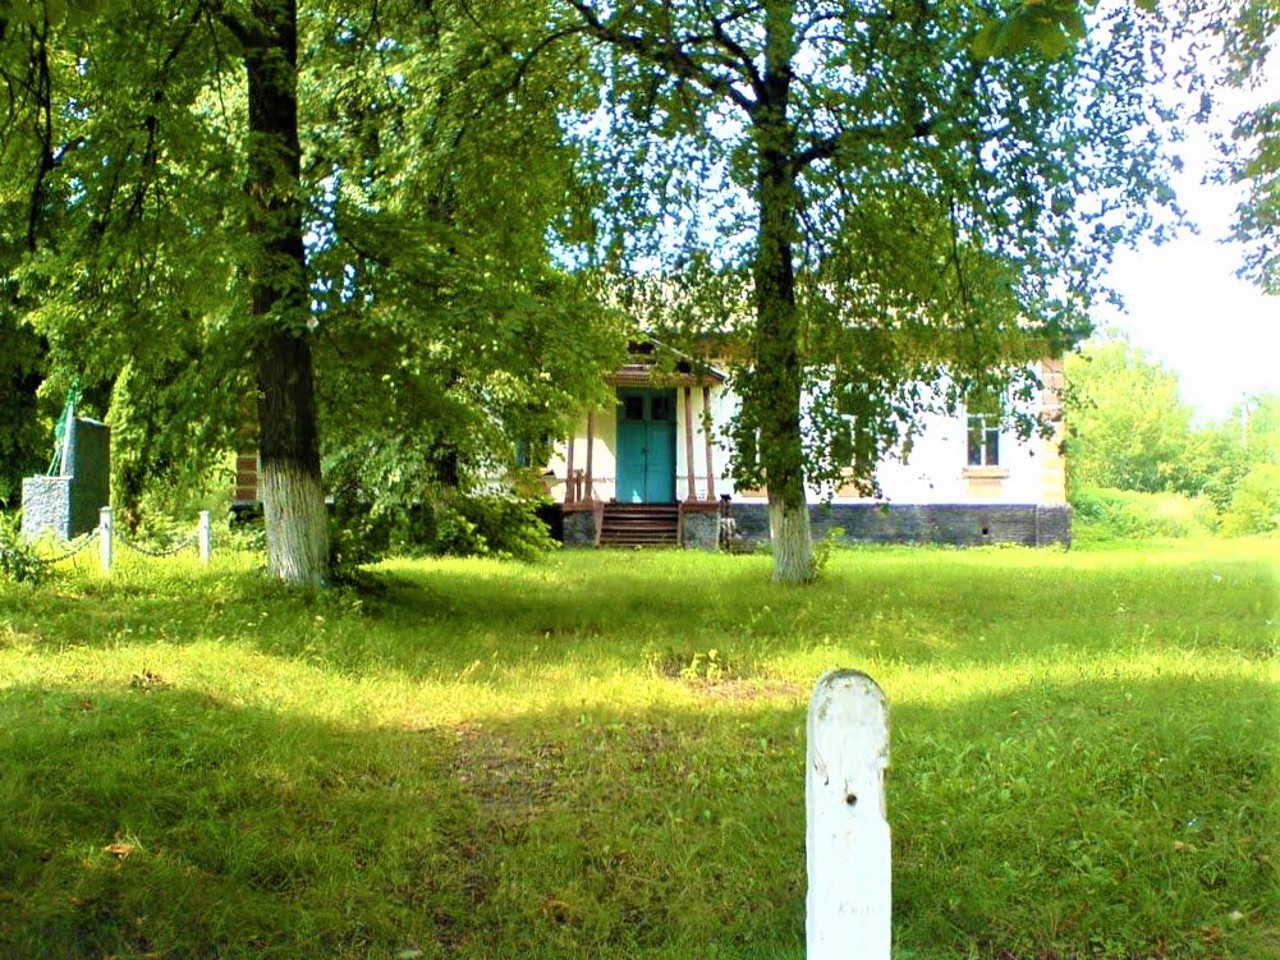 Parafiivka village